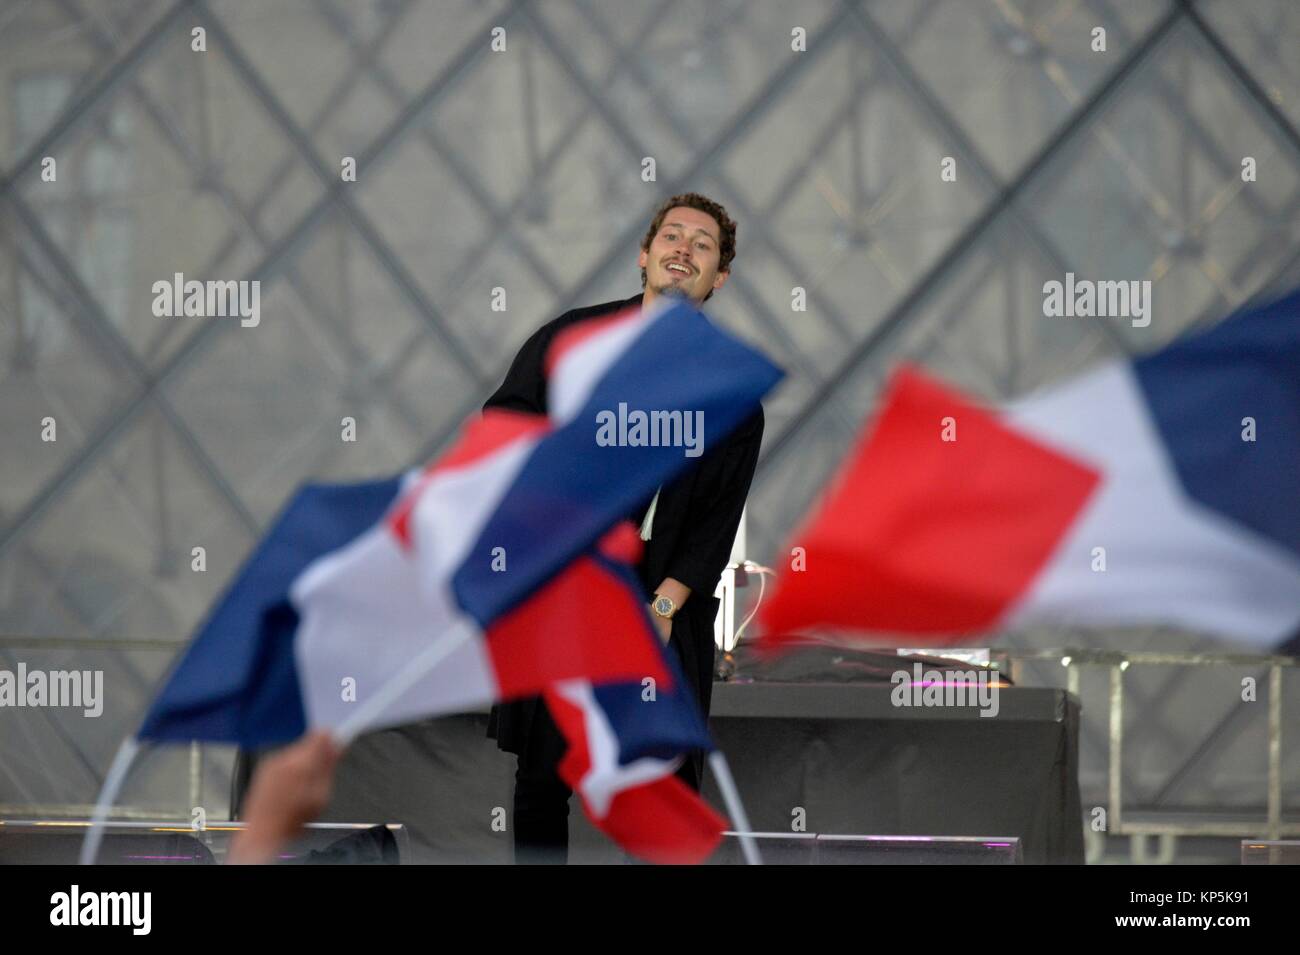 El cantante Cris Cab festejar la victoria del nuevo presidente francés Emmanuel Macron fuera del museo del Louvre en París, Francia. Foto de stock